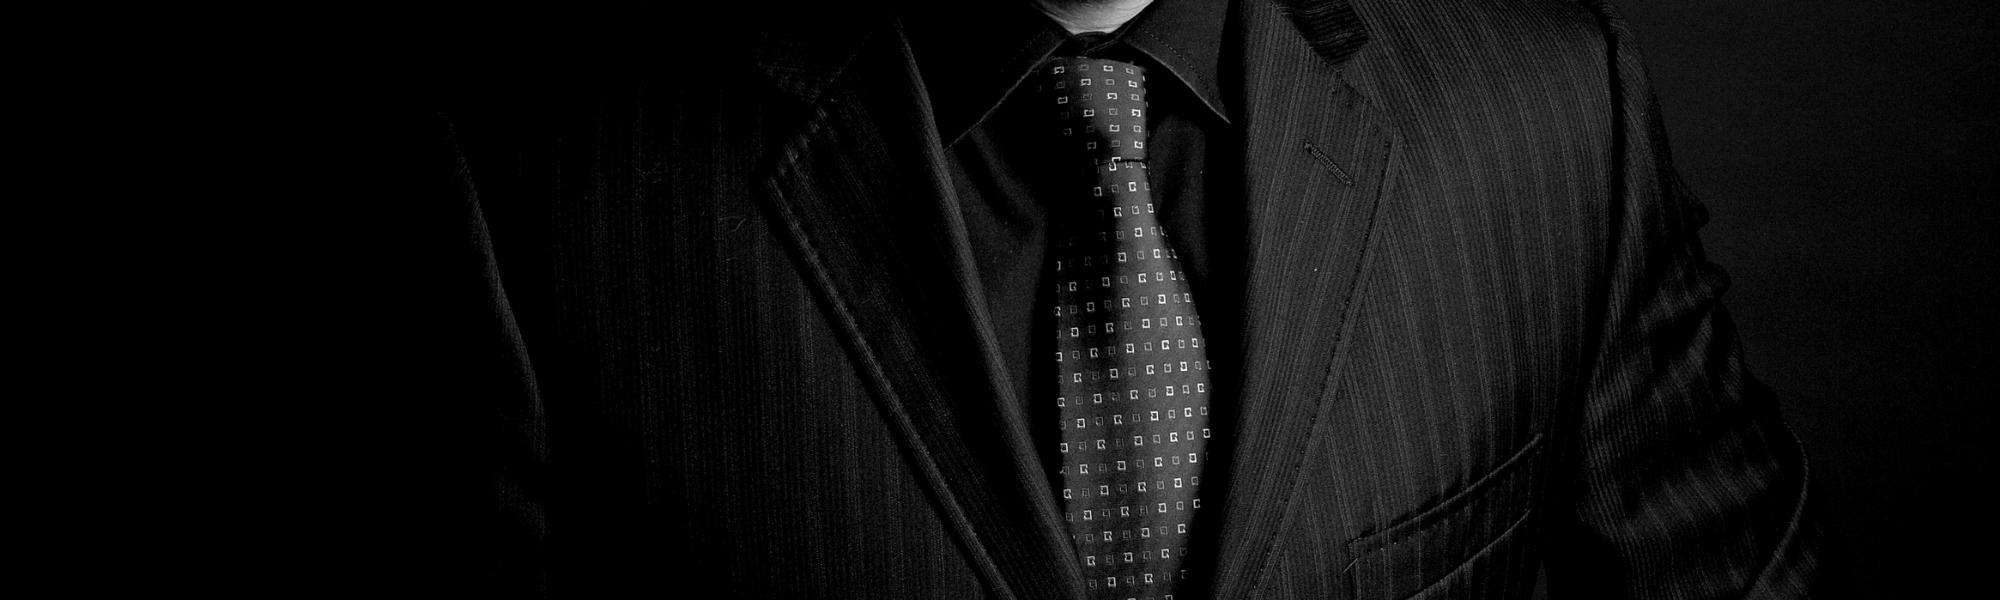 Trajes formales de hombre  Men's formal suits